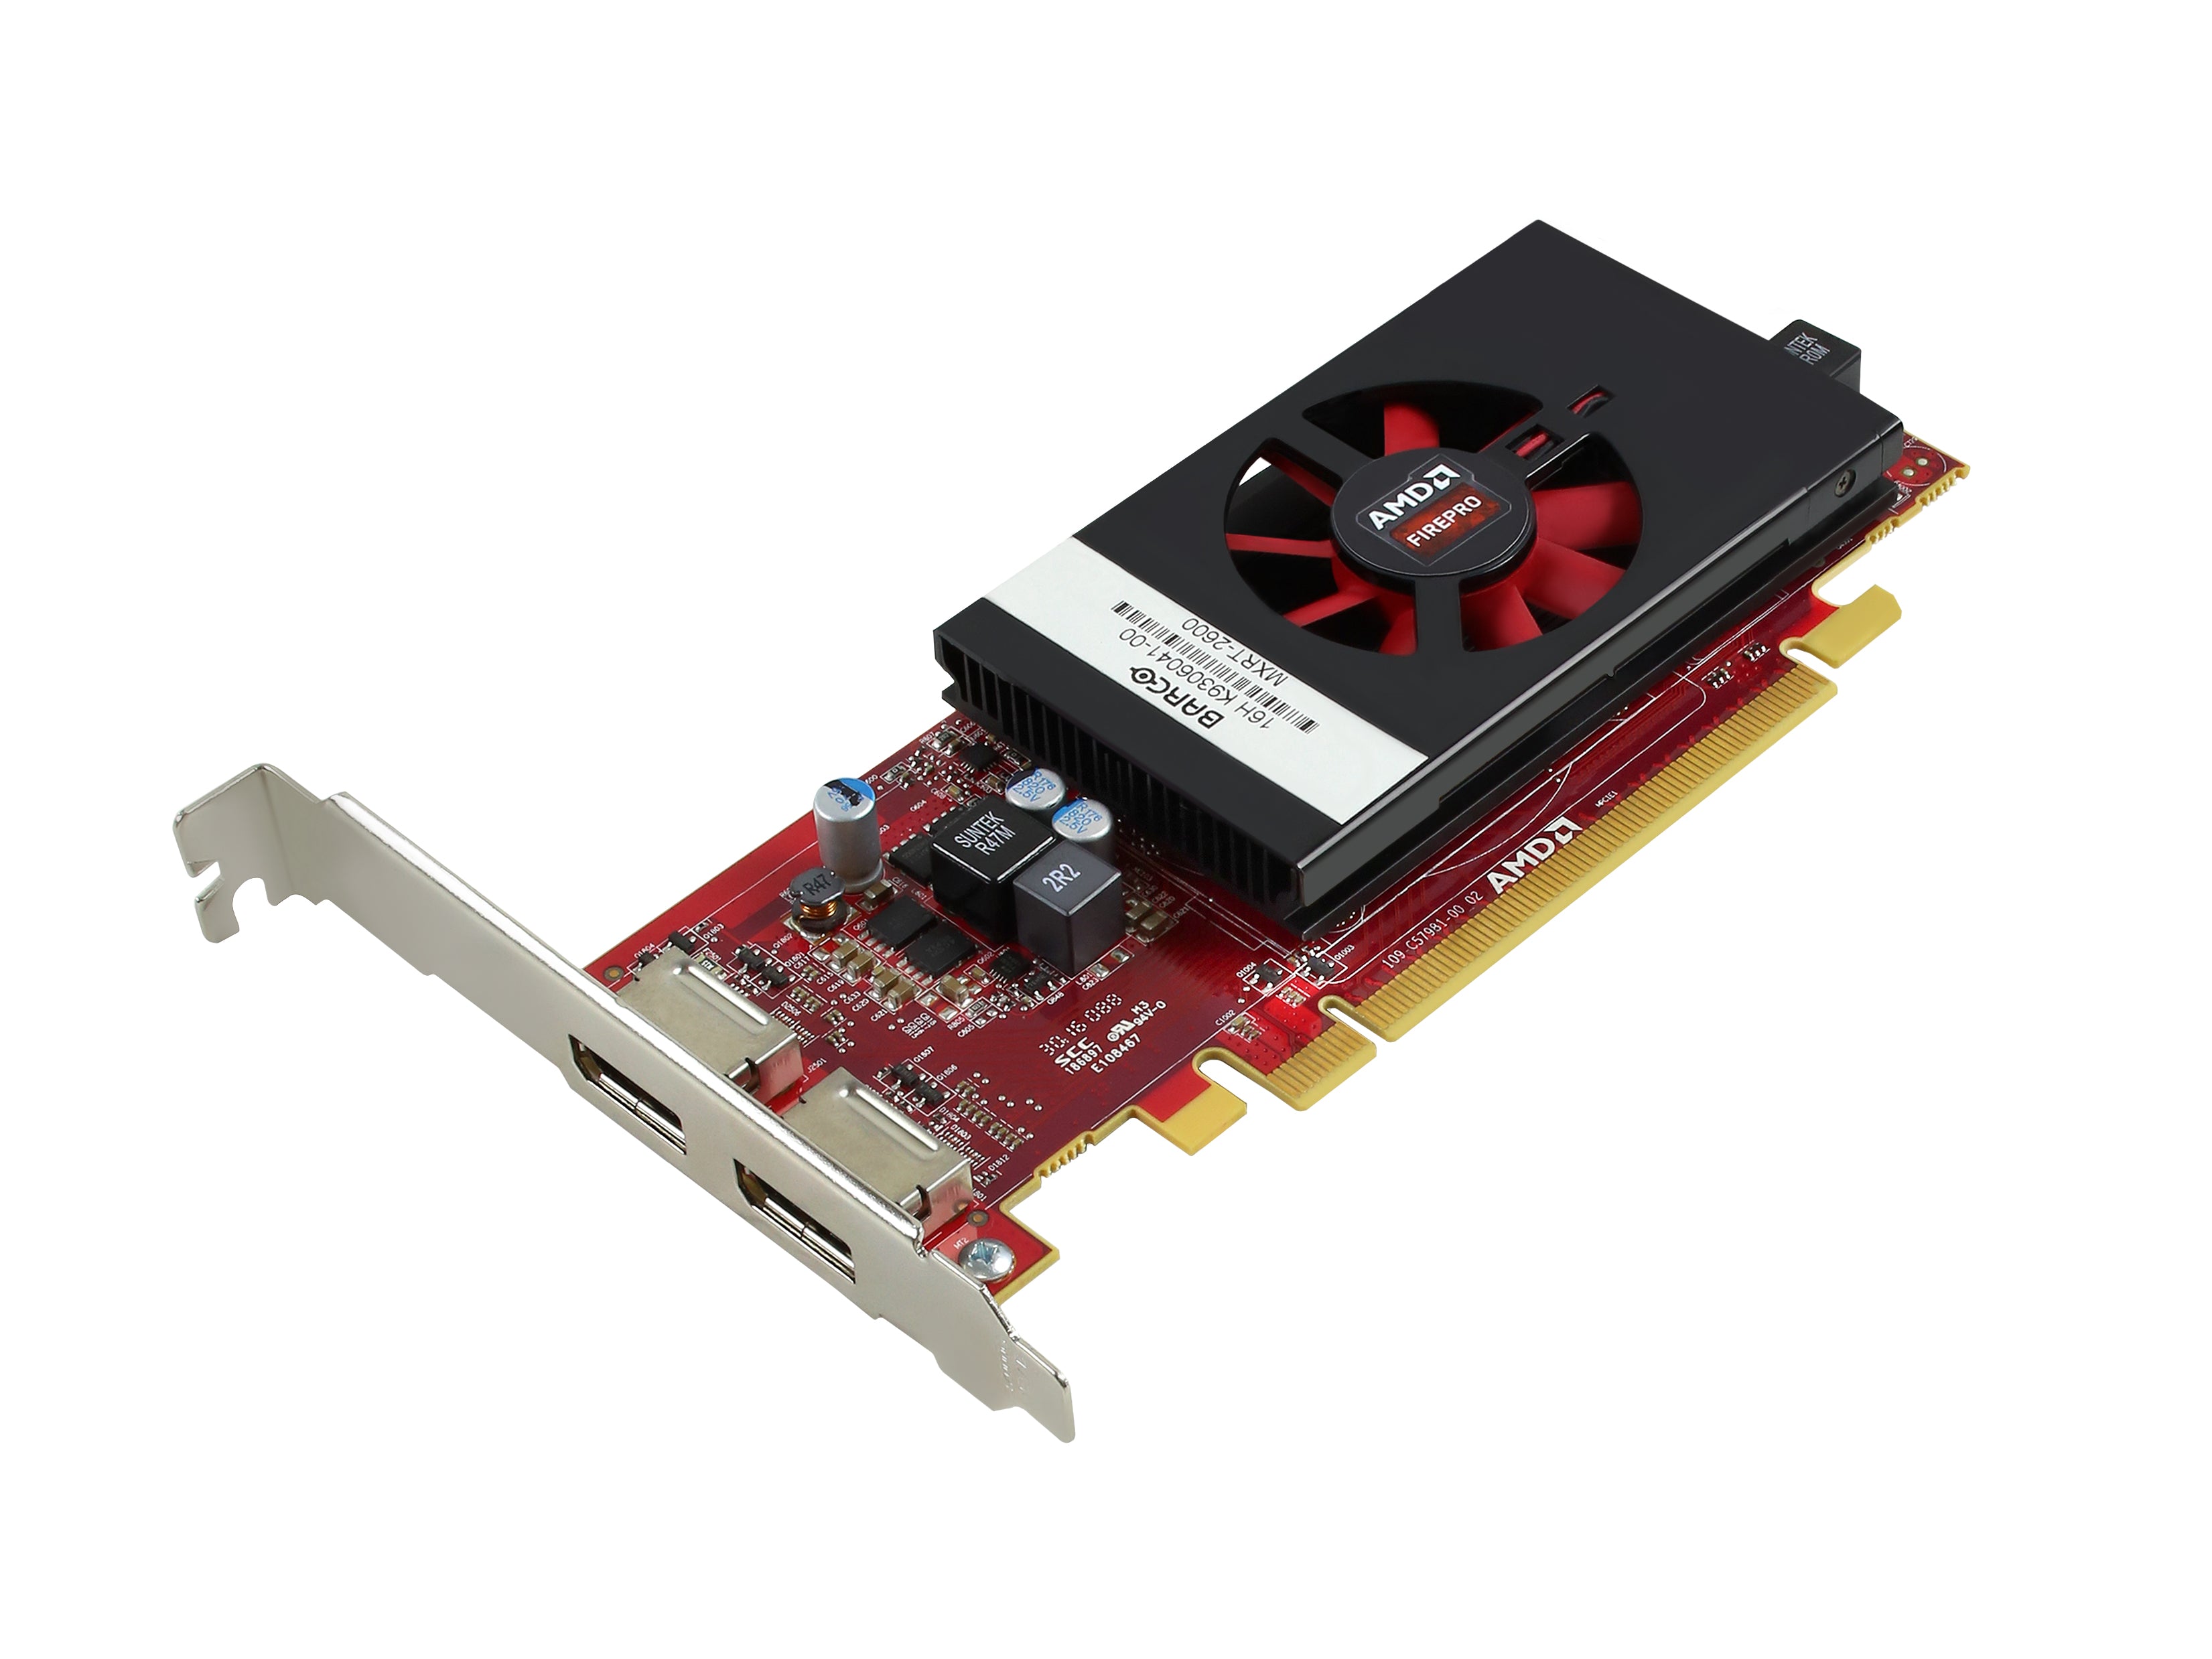 Barco Tarjeta gráfica PCIe MXRT-2600 de 2 GB (K9306041) Monitors.com